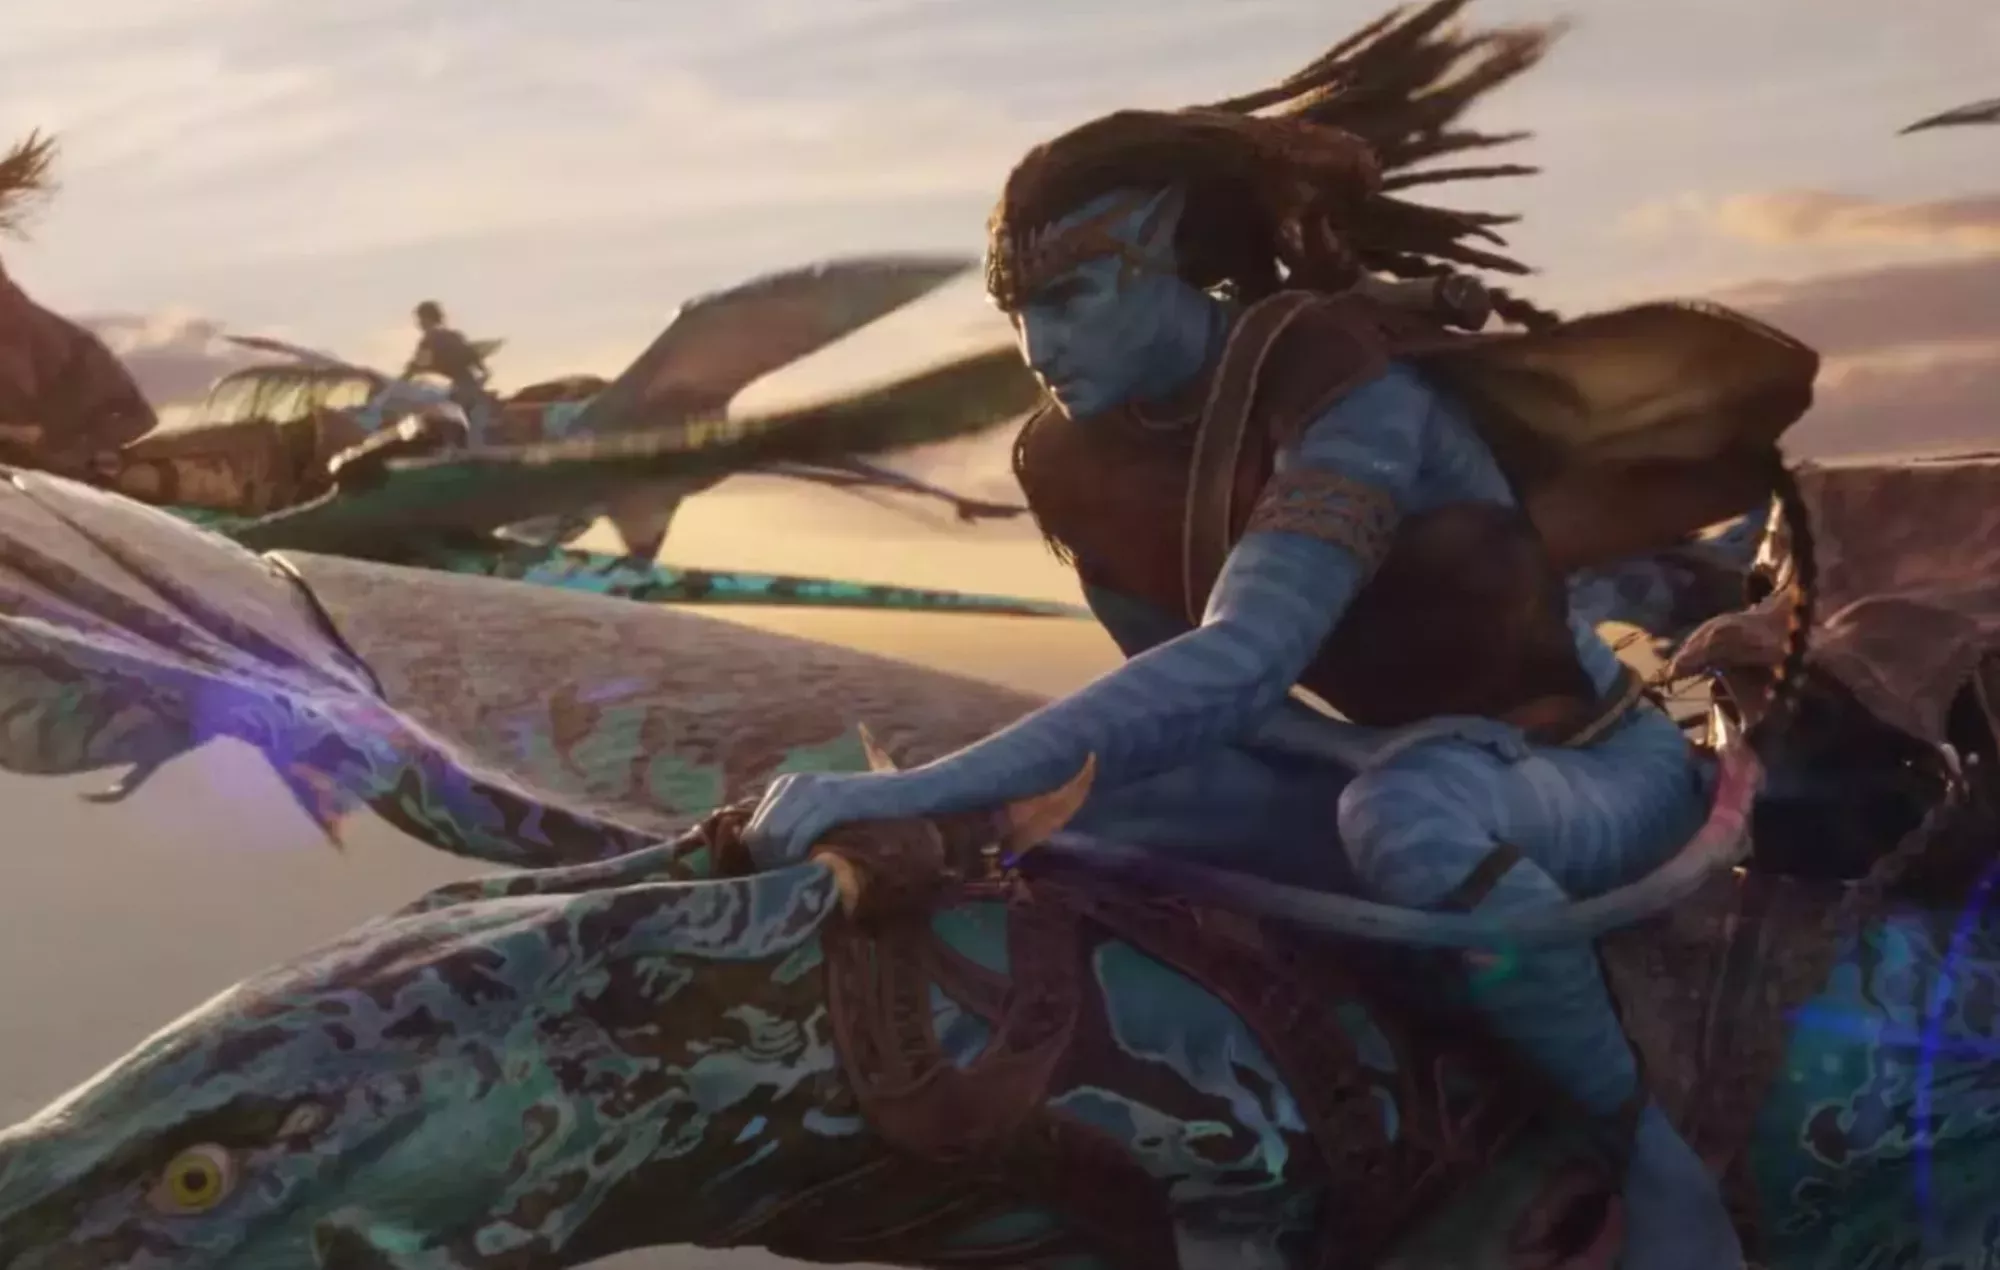 Mira cómo Sully recorre nuevos mundos submarinos en el último tráiler de 'Avatar: La forma del agua'